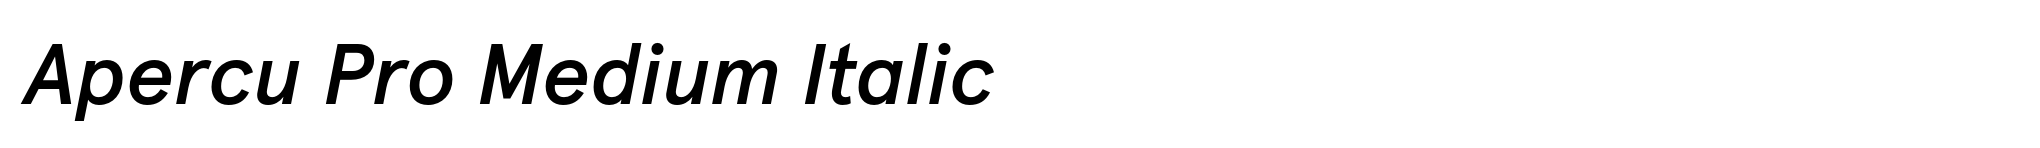 Apercu Pro Medium Italic image